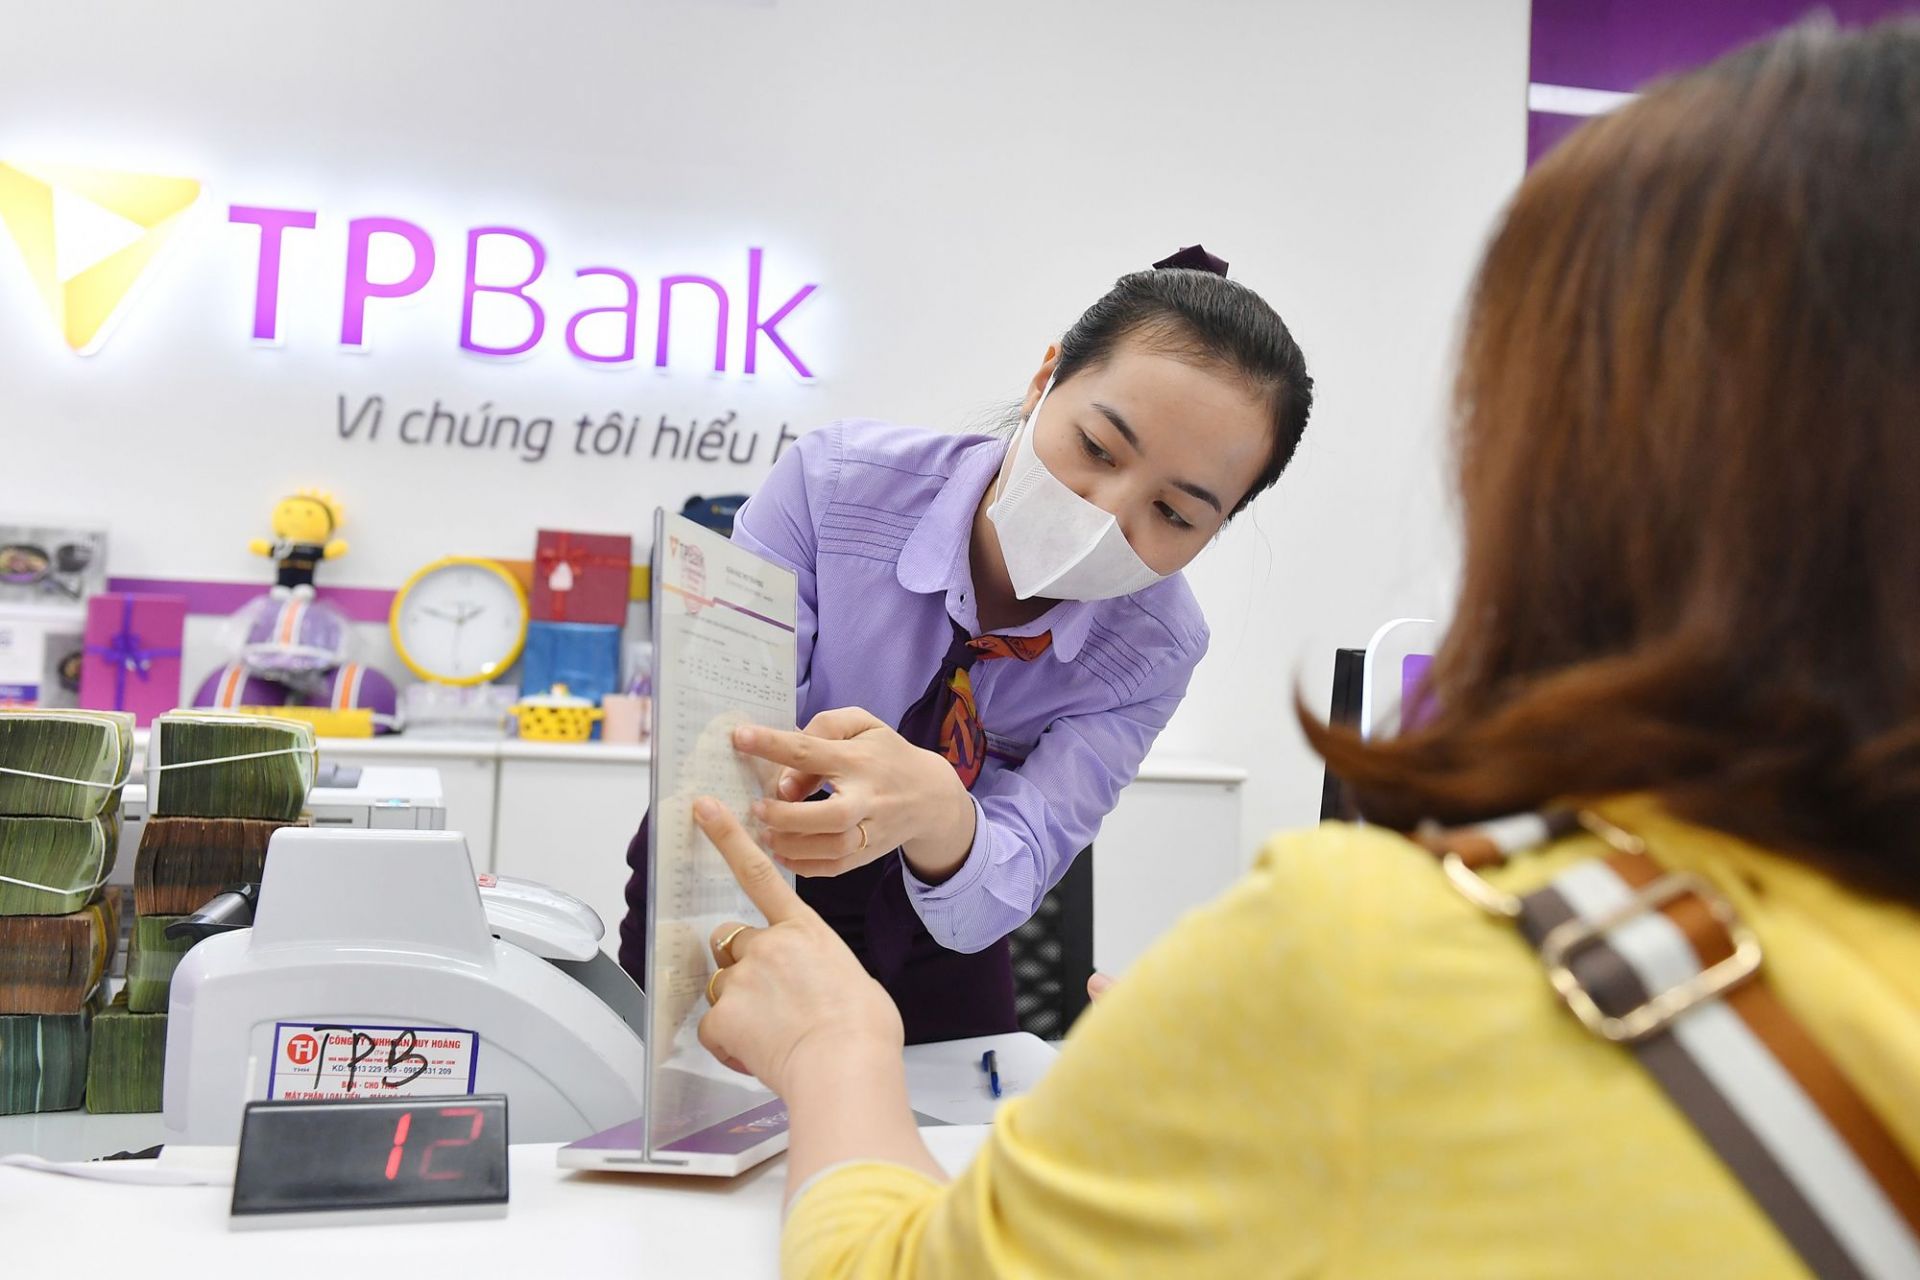 Gần 180 cuộc gọi phản ánh về ngân hàng “ép” khách gửi tiền mua bảo hiểm sau một tháng công bố đường dây nóng                                    